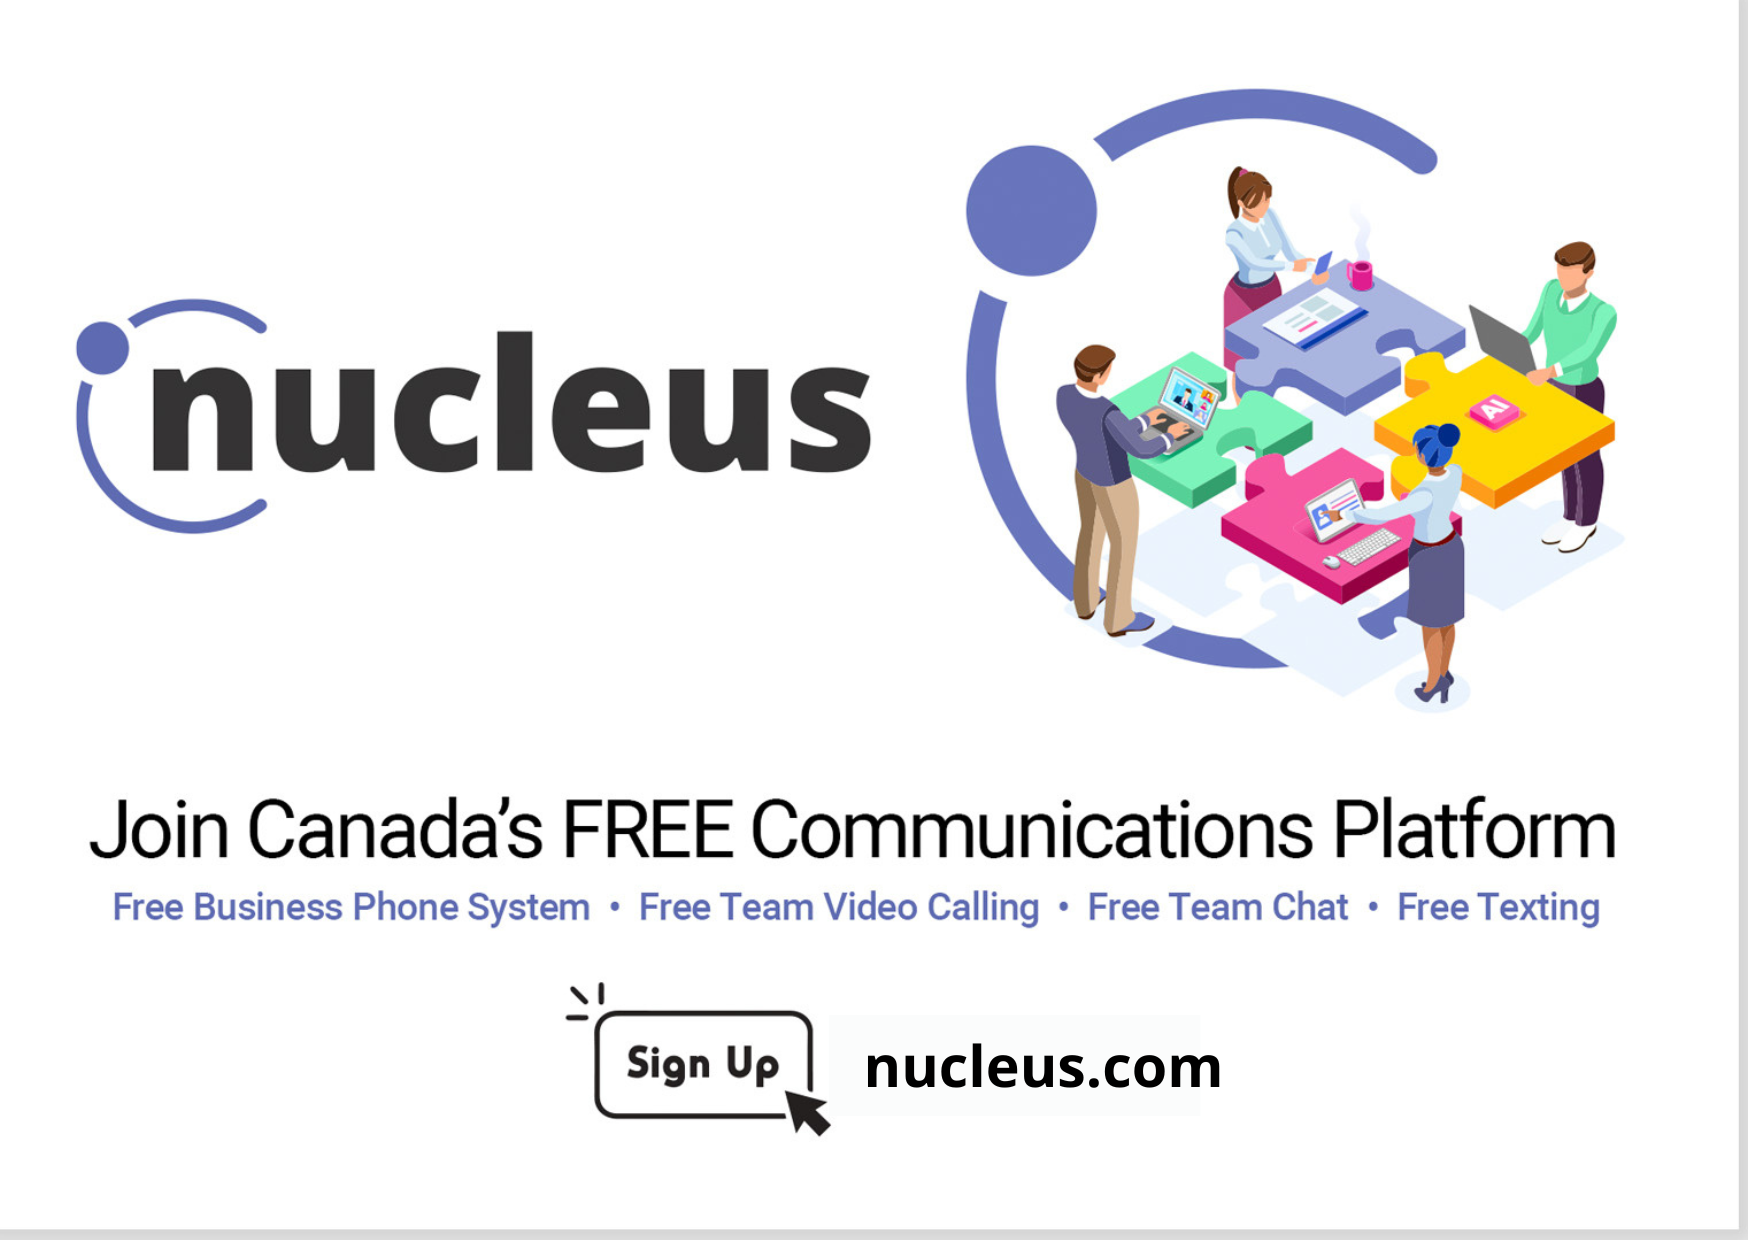 Nucleus Promo